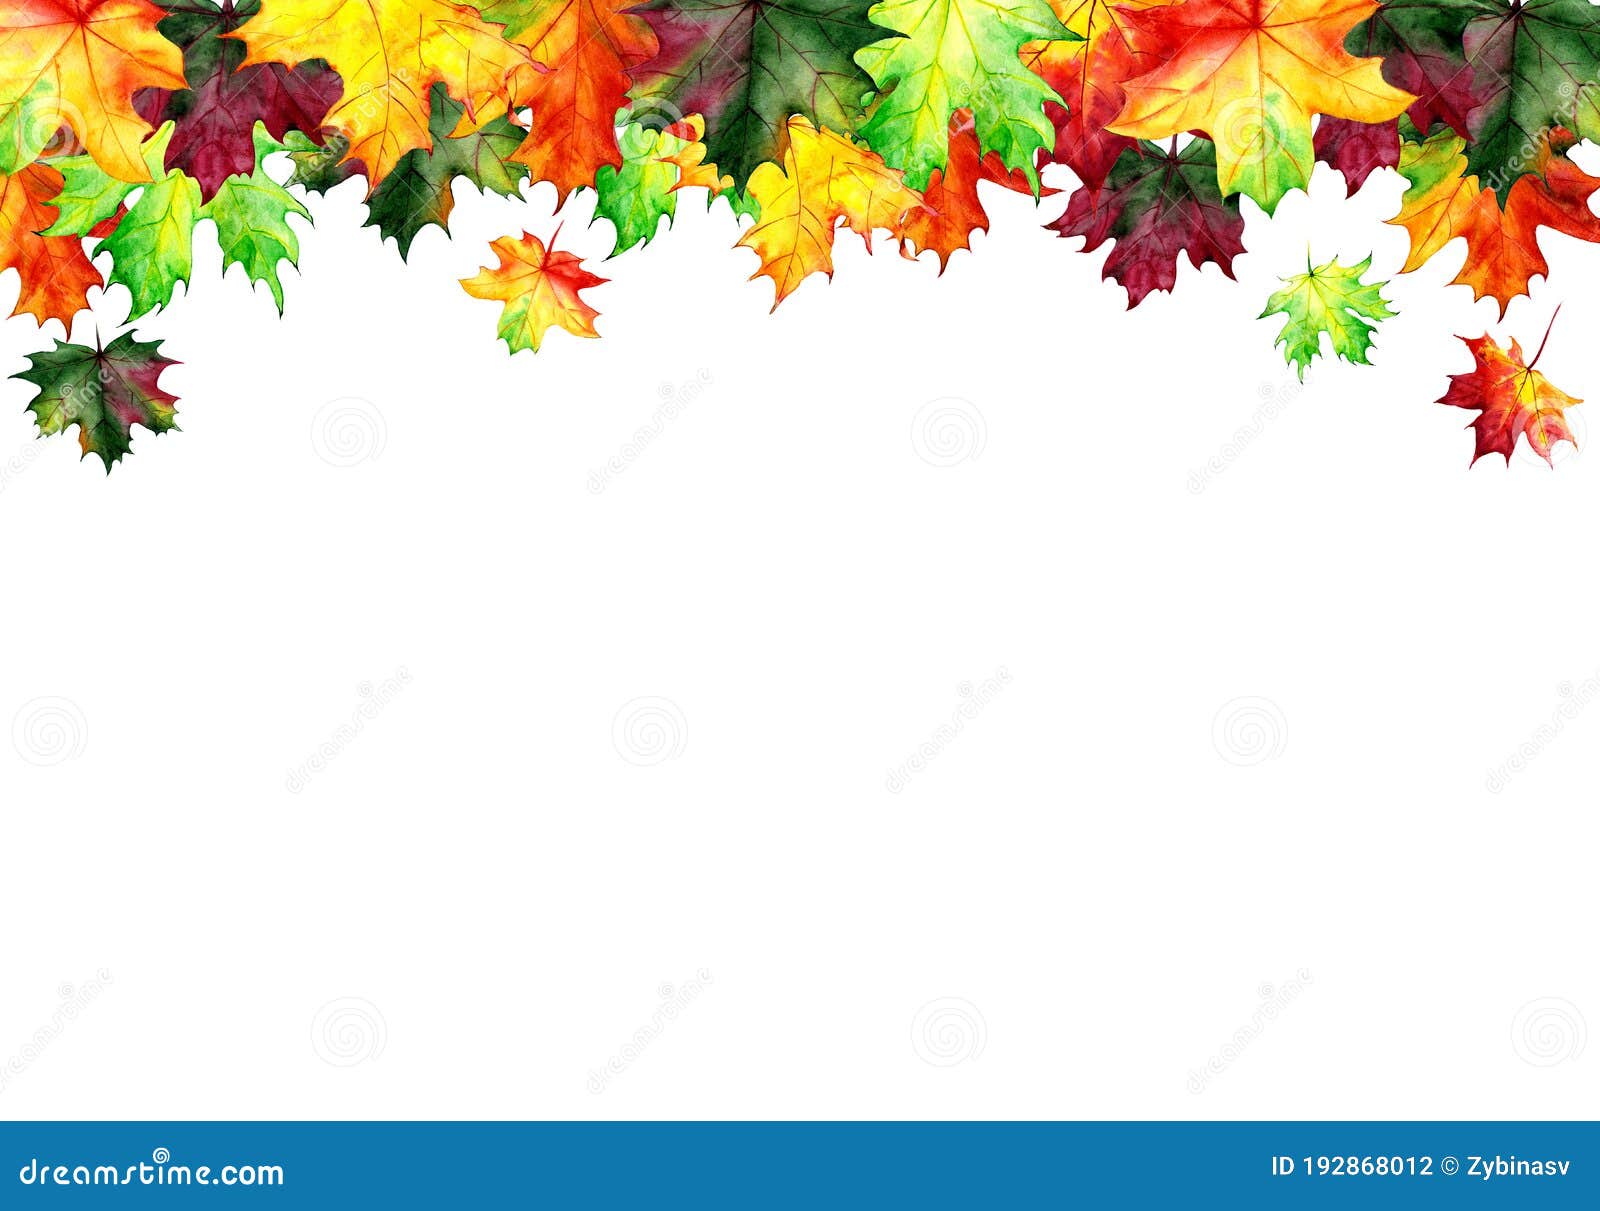 Folhas De Outono, Desenhadas Em Cartolina, Cortadas Em 4 Partes